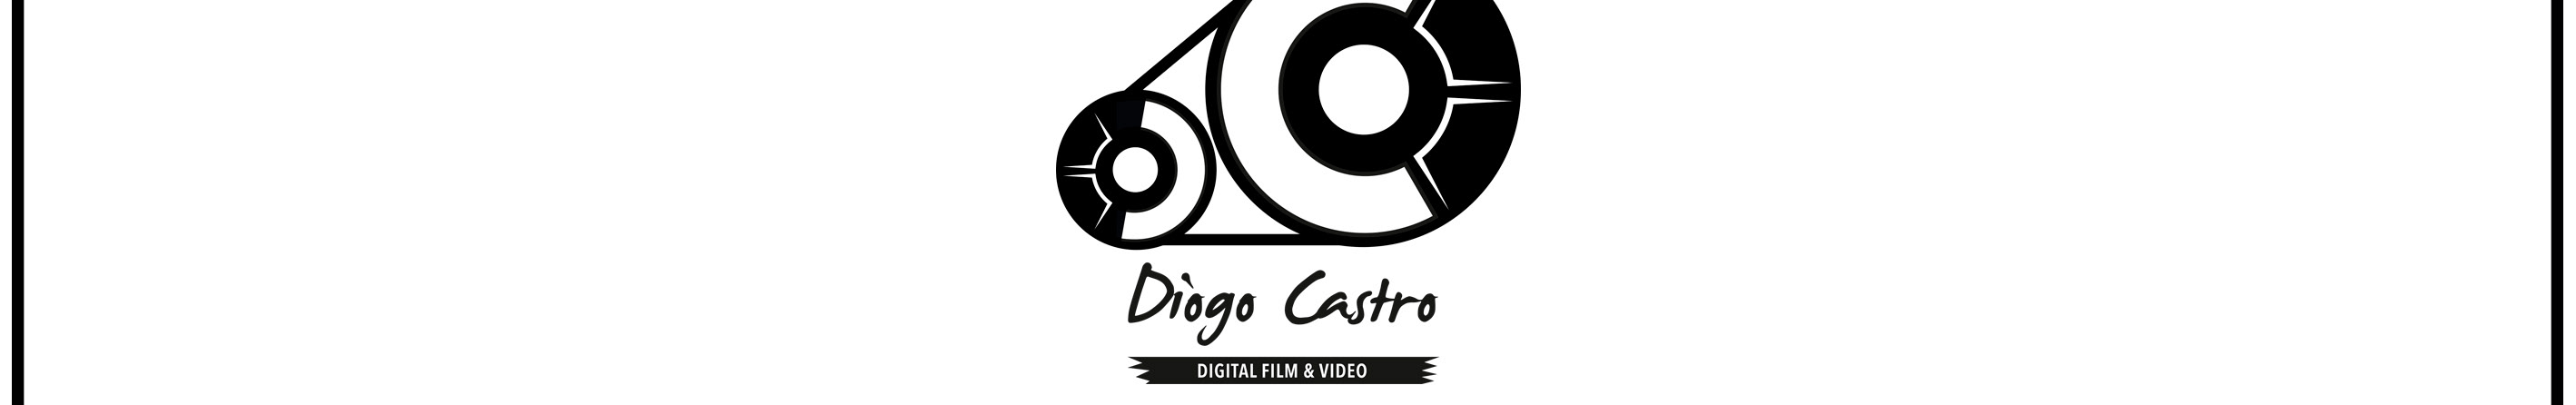 Diogo Castro's profile banner